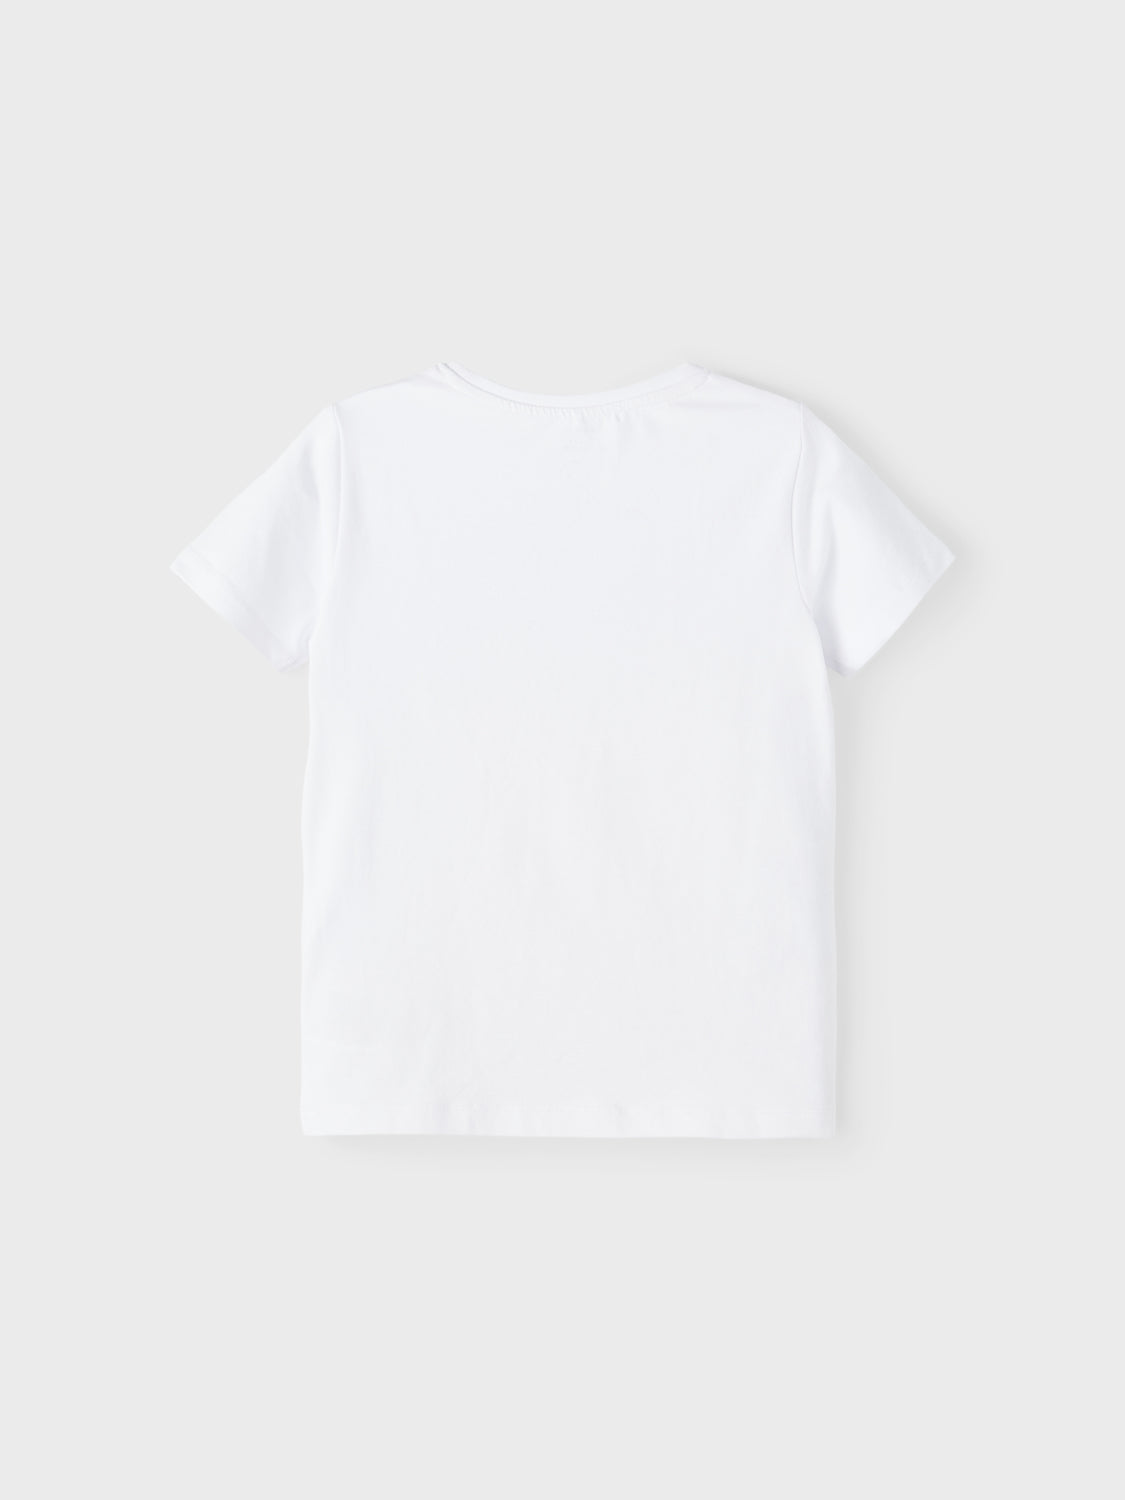 NKMMOSO T-shirts & Tops - Bright White